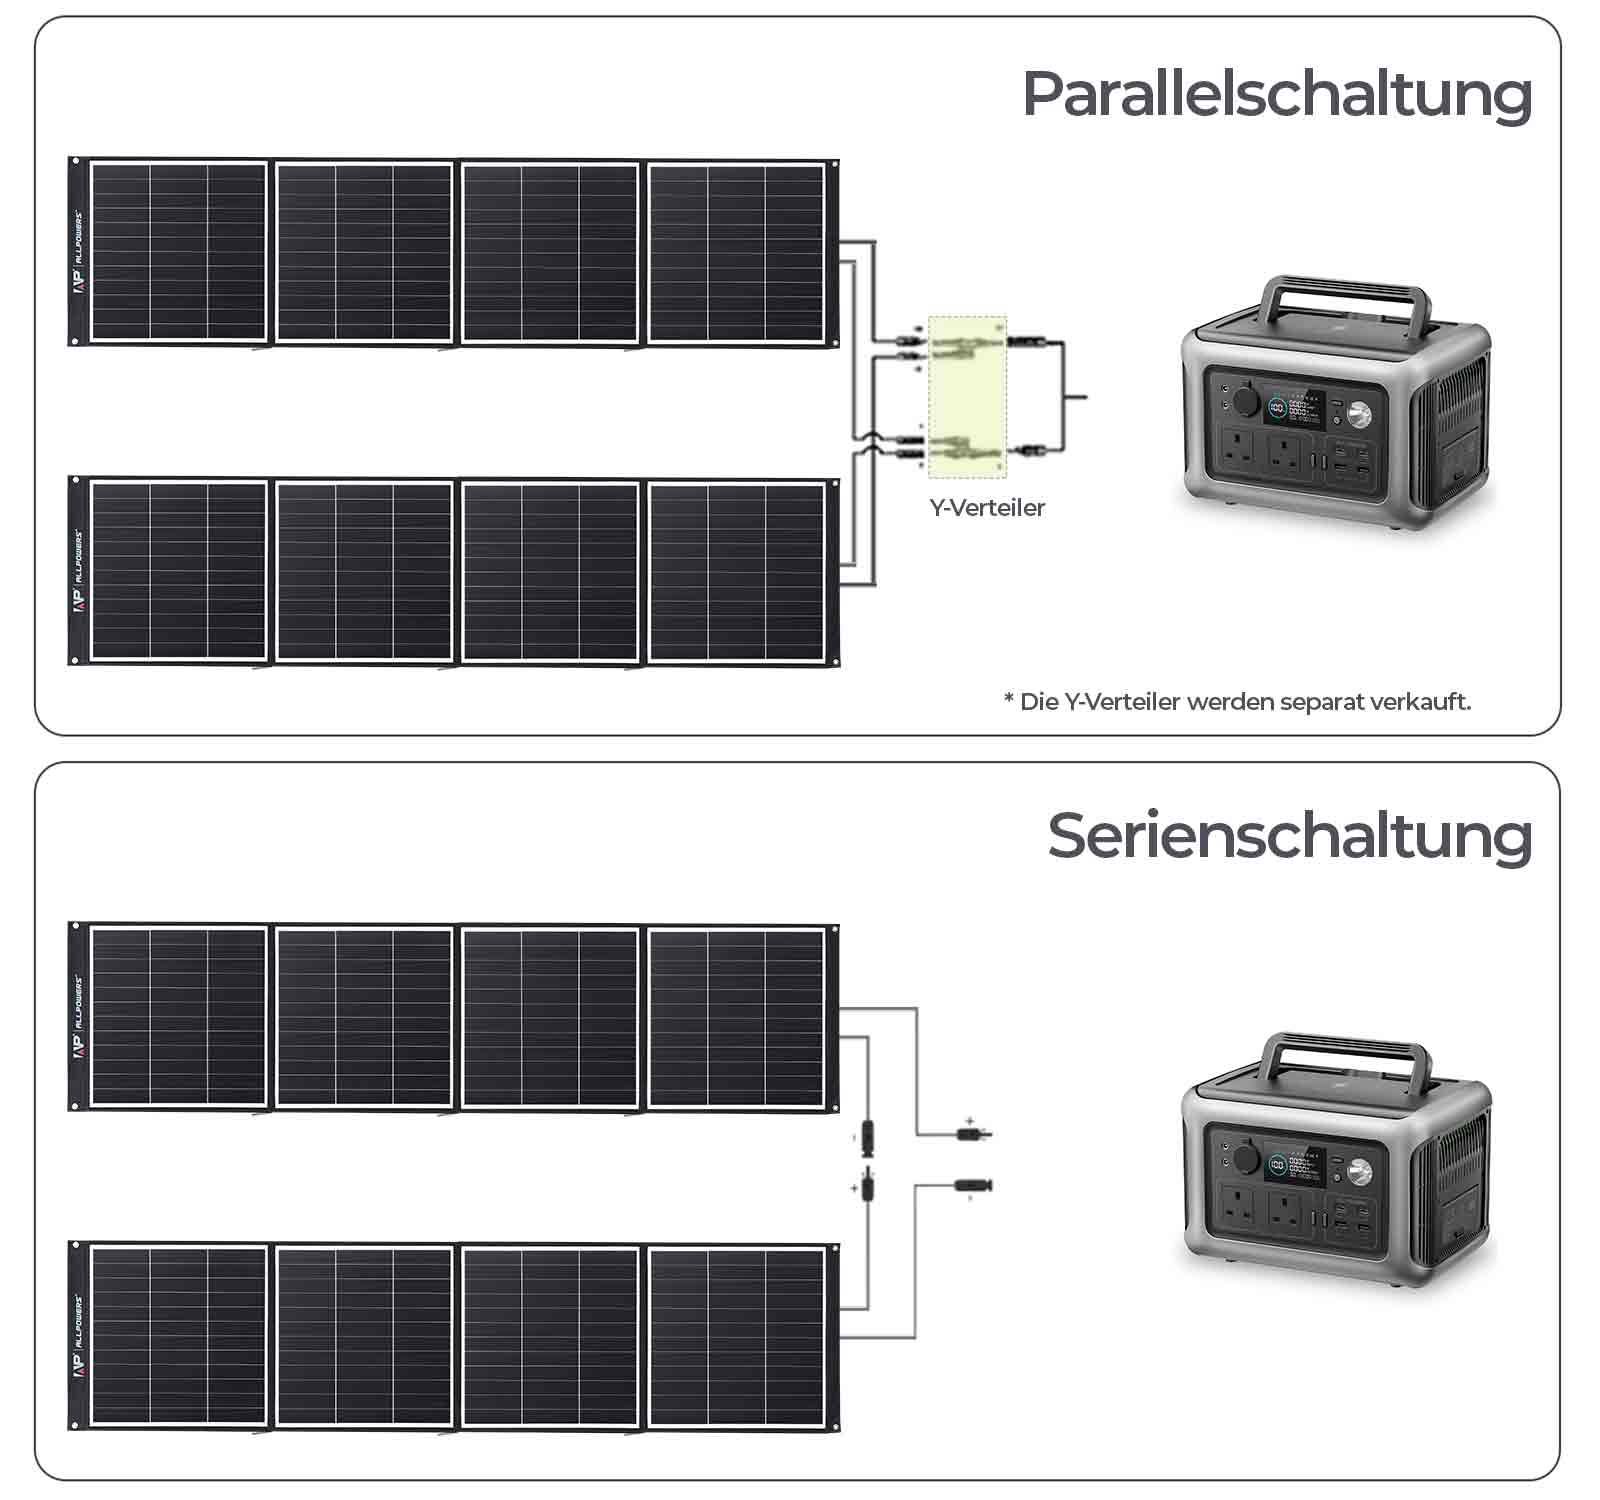 sp035-panel-parallel-connection-1600-DE.jpg